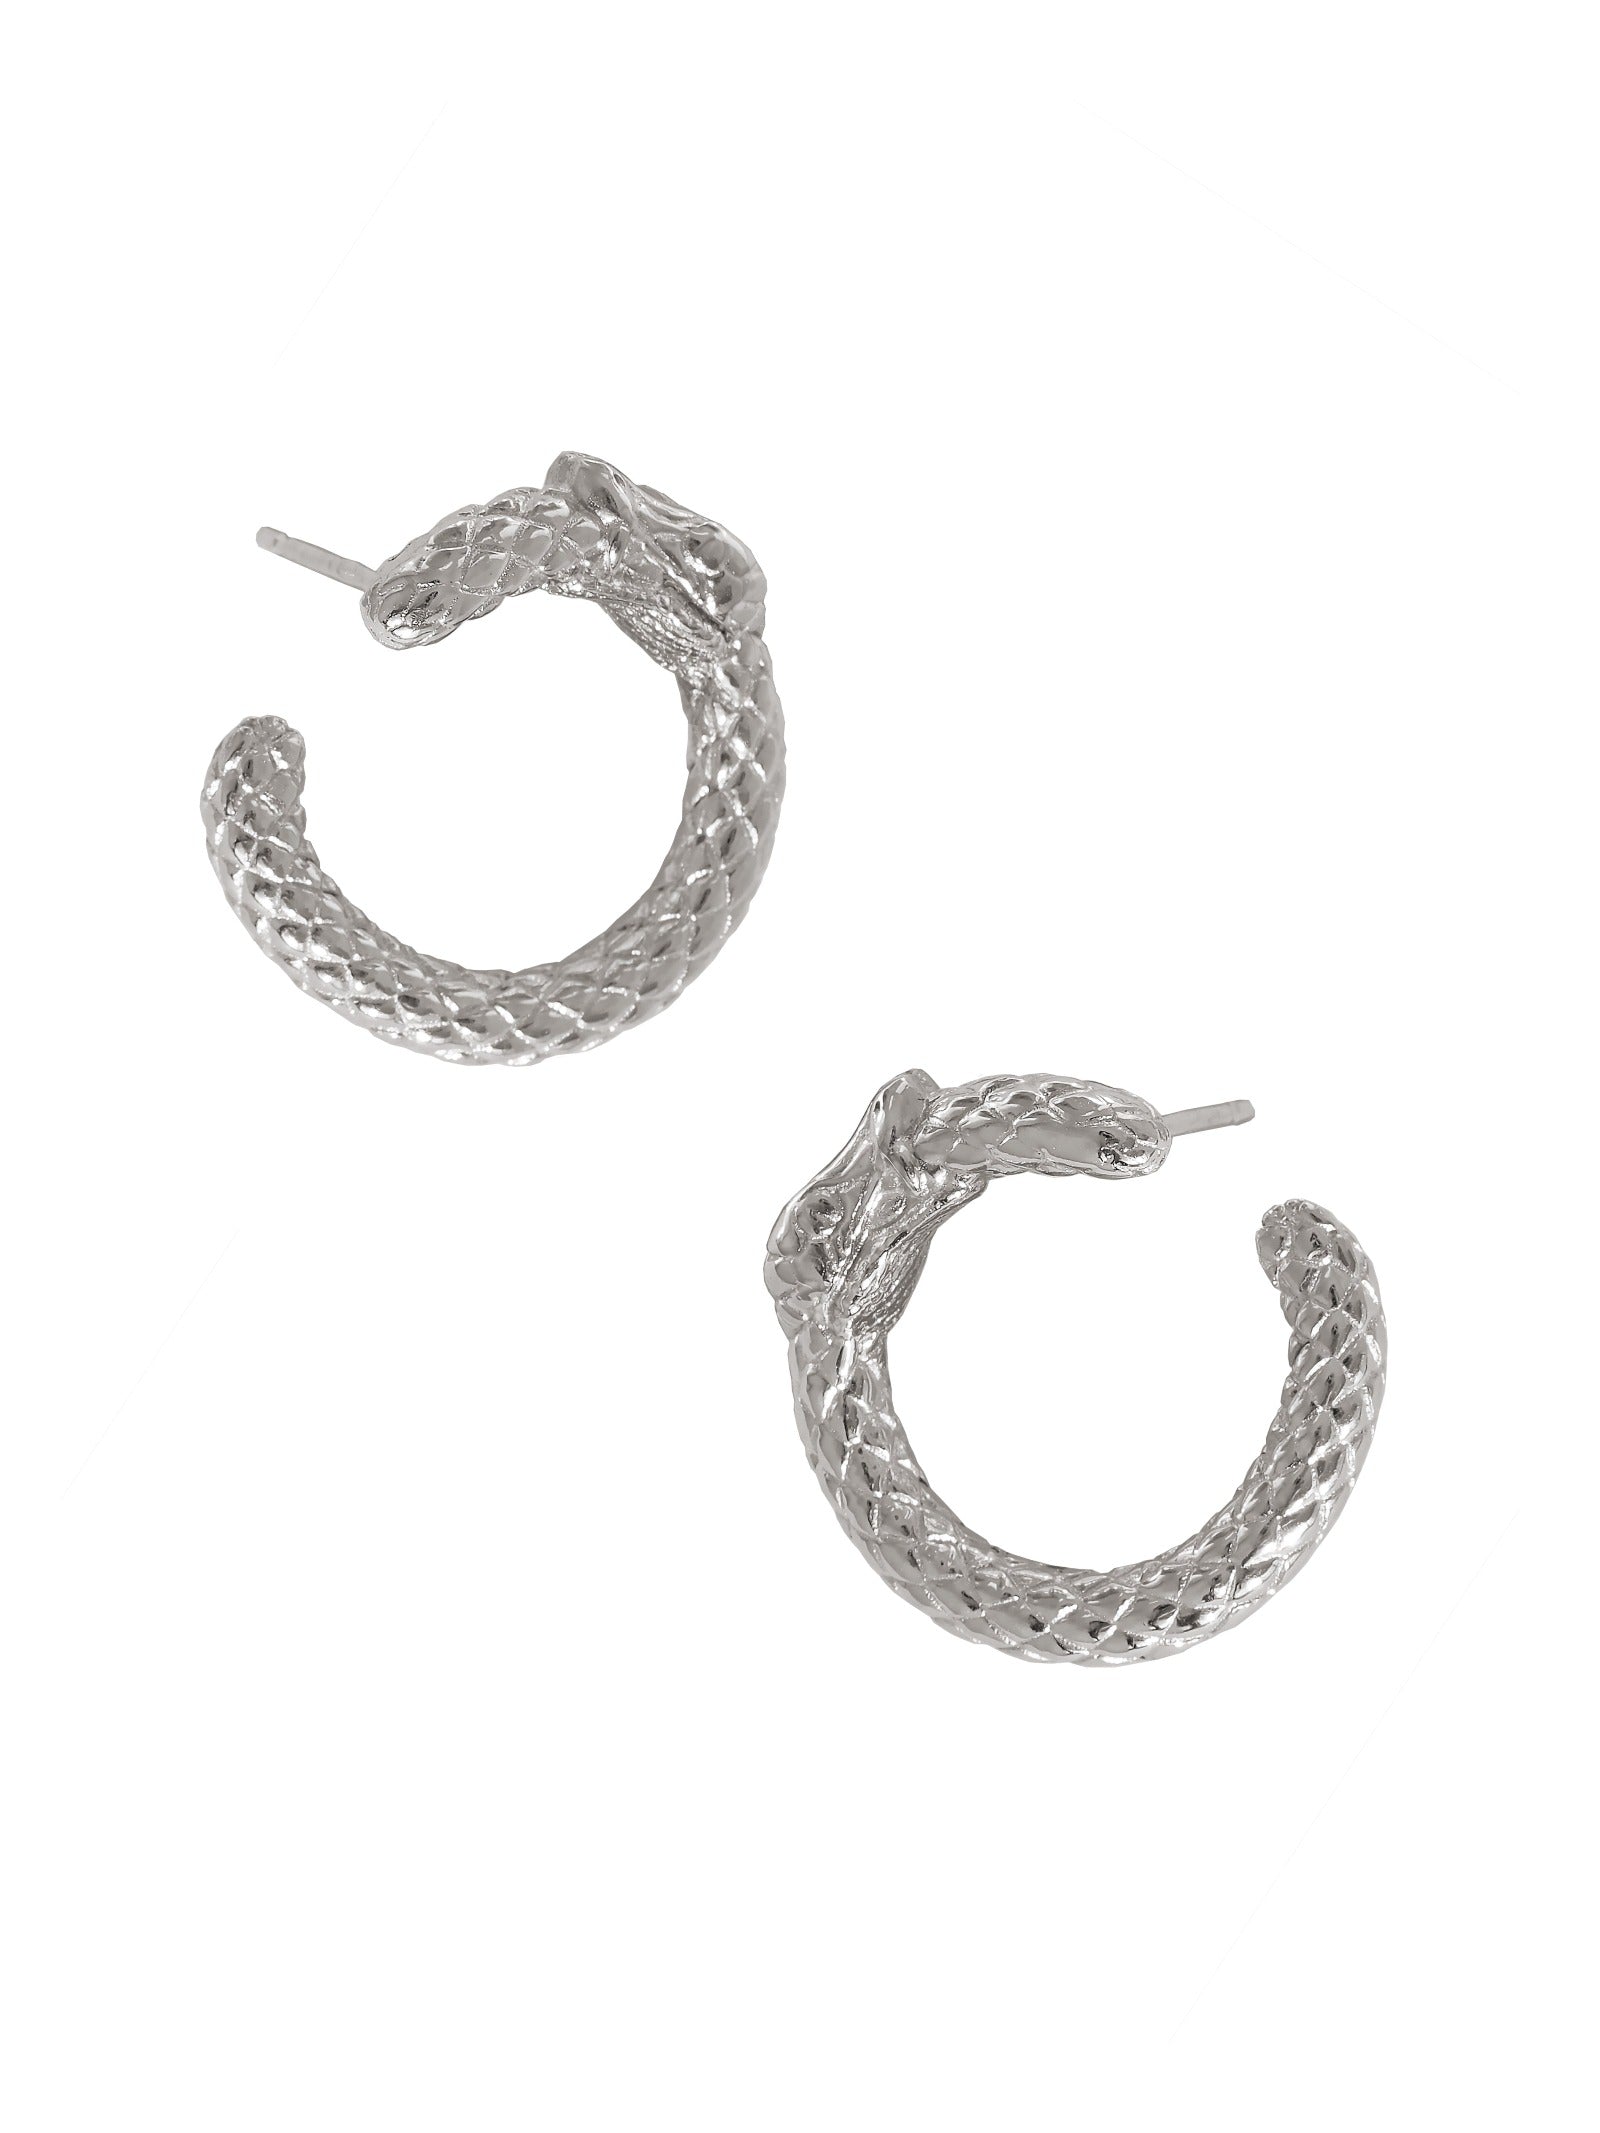 Ouroboros Hoop Earrings. 925 Sterling Silver. Gender Neutral